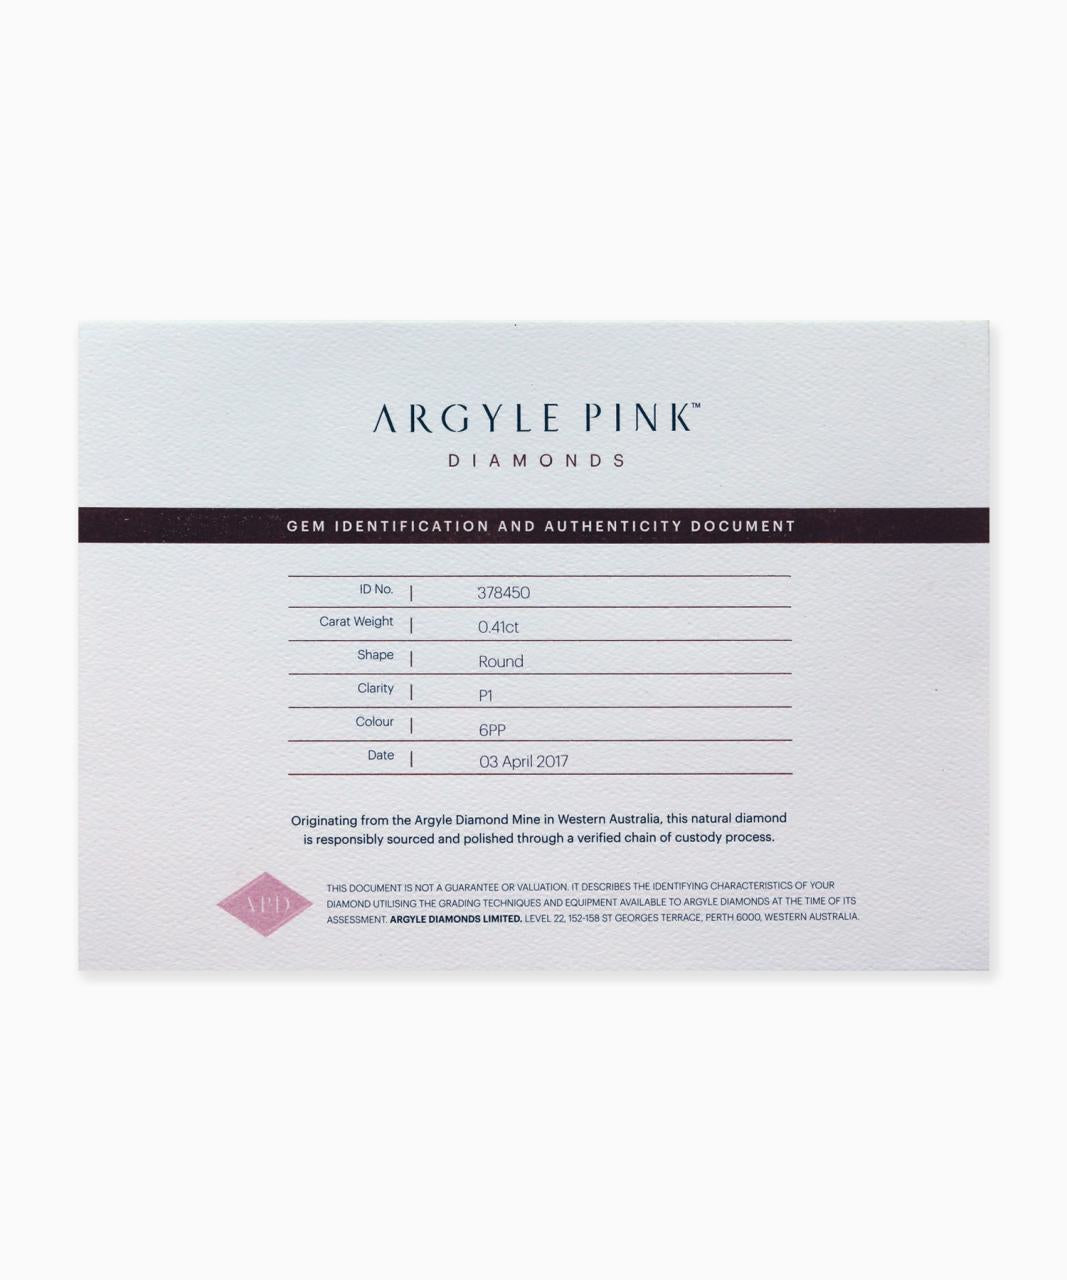 0.41ct 6PP, P1, Argyle Pink Diamond